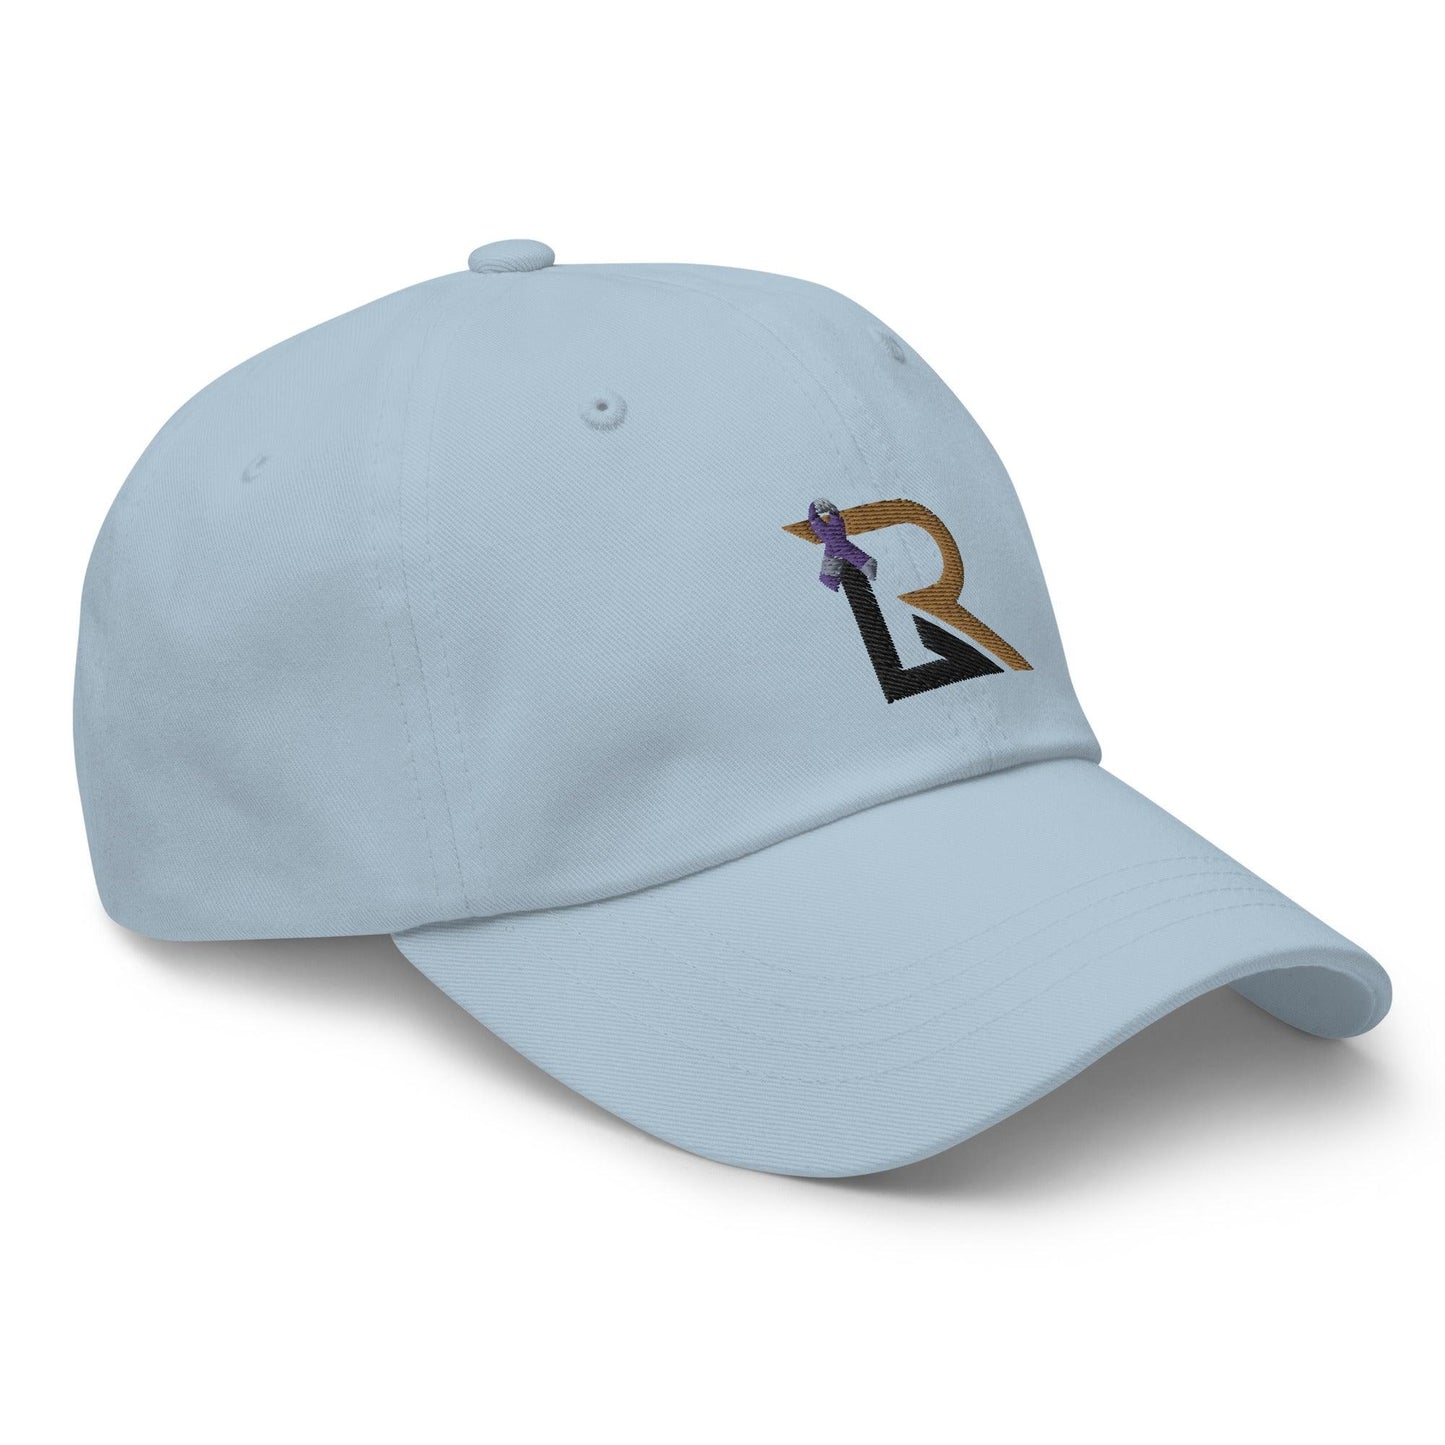 Rhett Lowder “RL” hat - Fan Arch